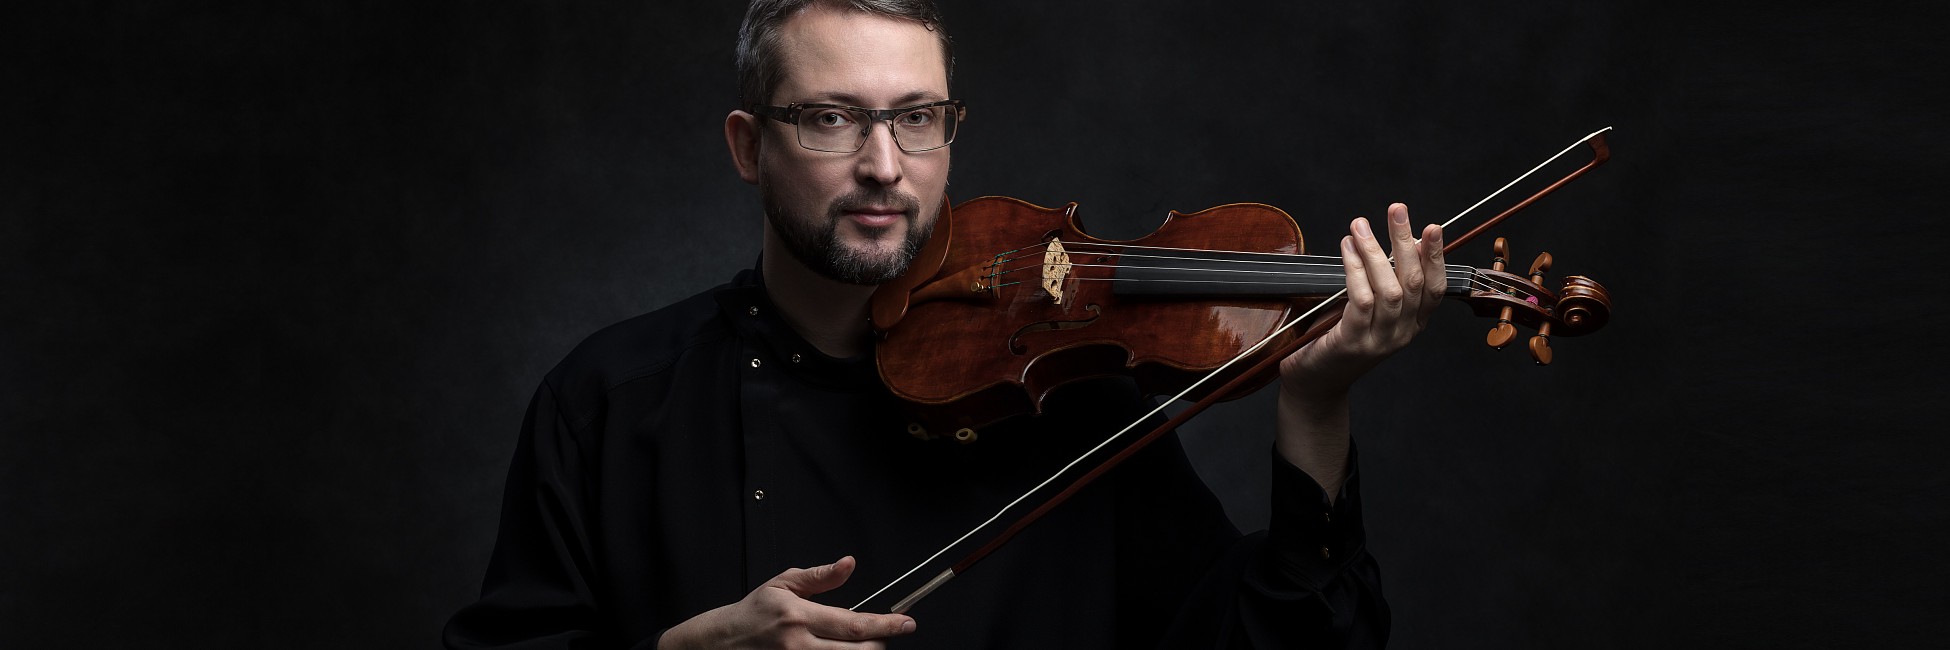 Alexander Shonert - houslista a pedagog